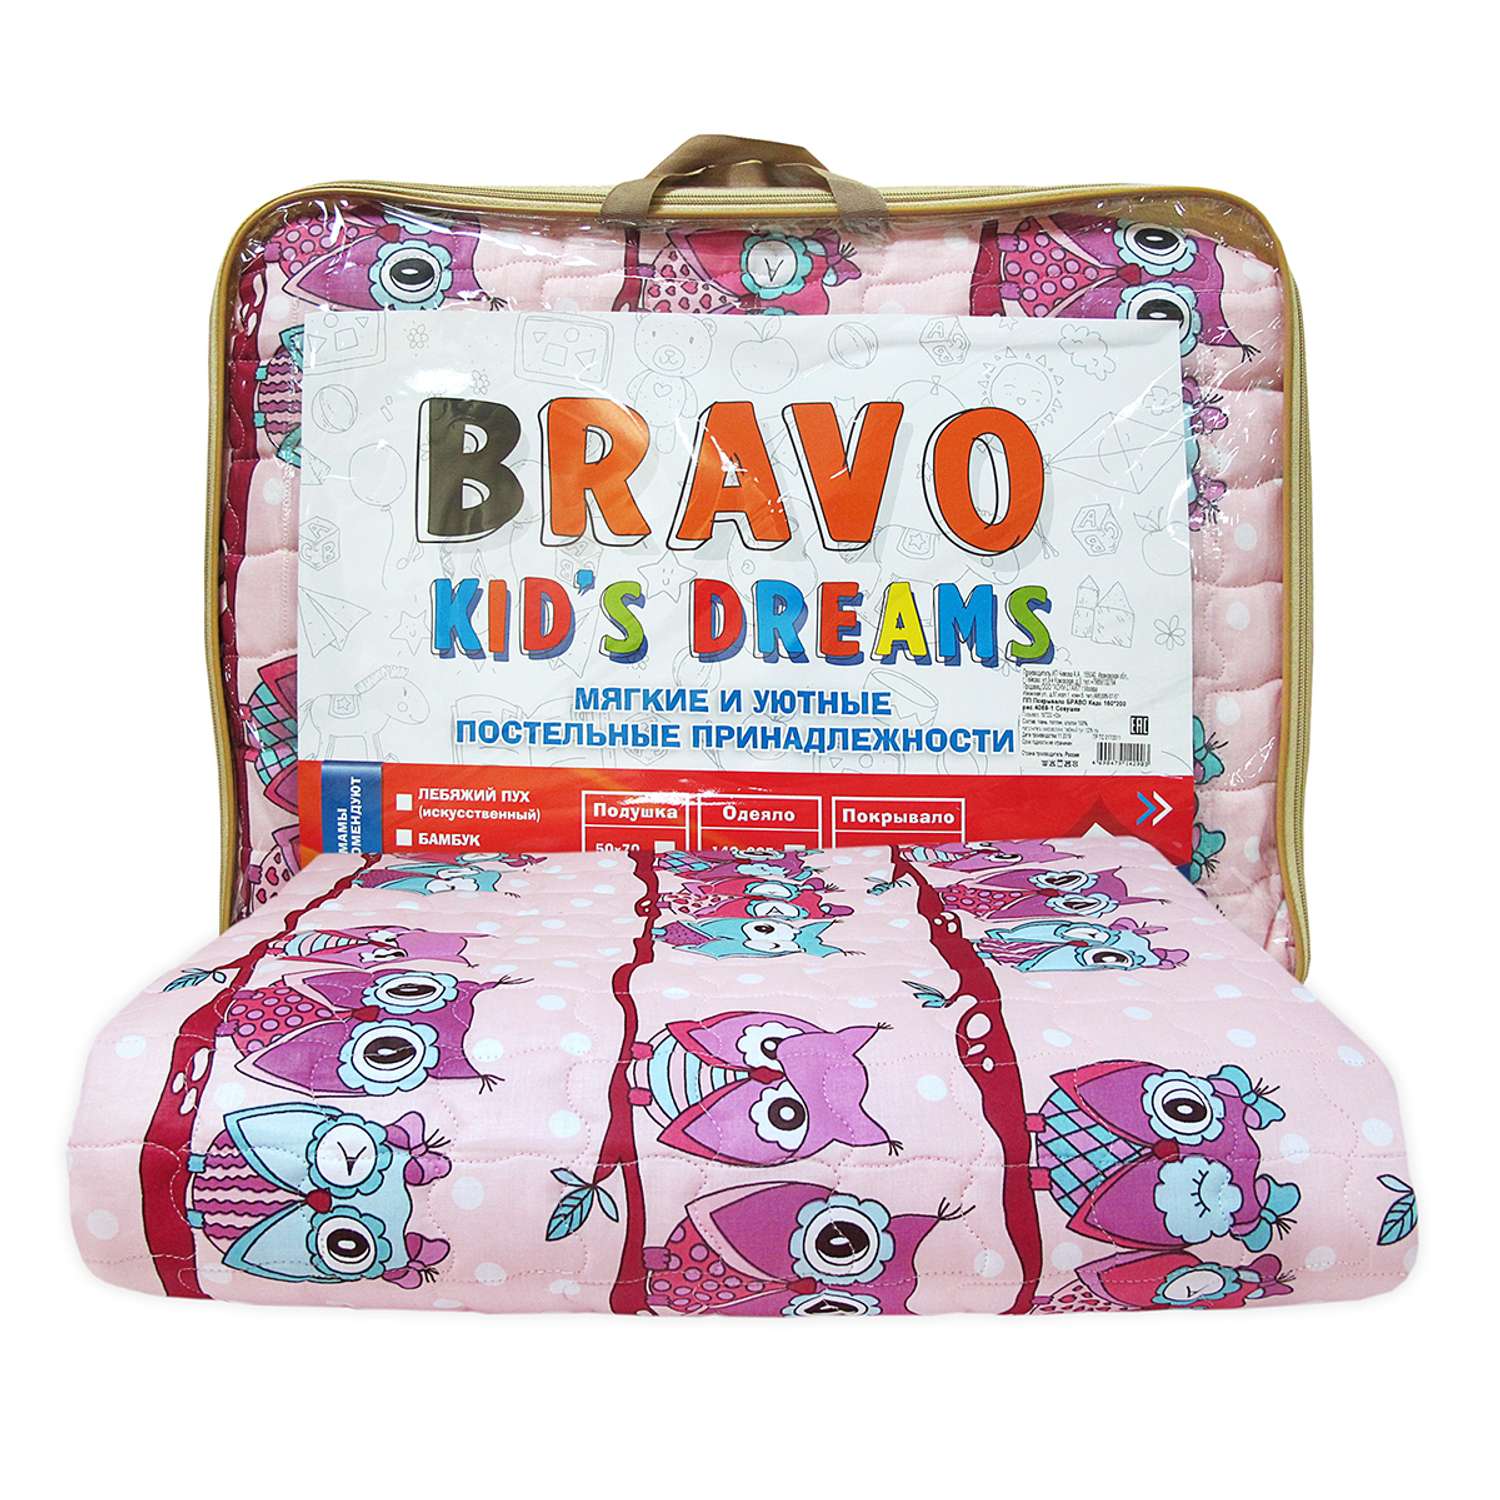 Покрывало BRAVO kids dreams Совушки 160*200 рис.4069-1 - фото 5